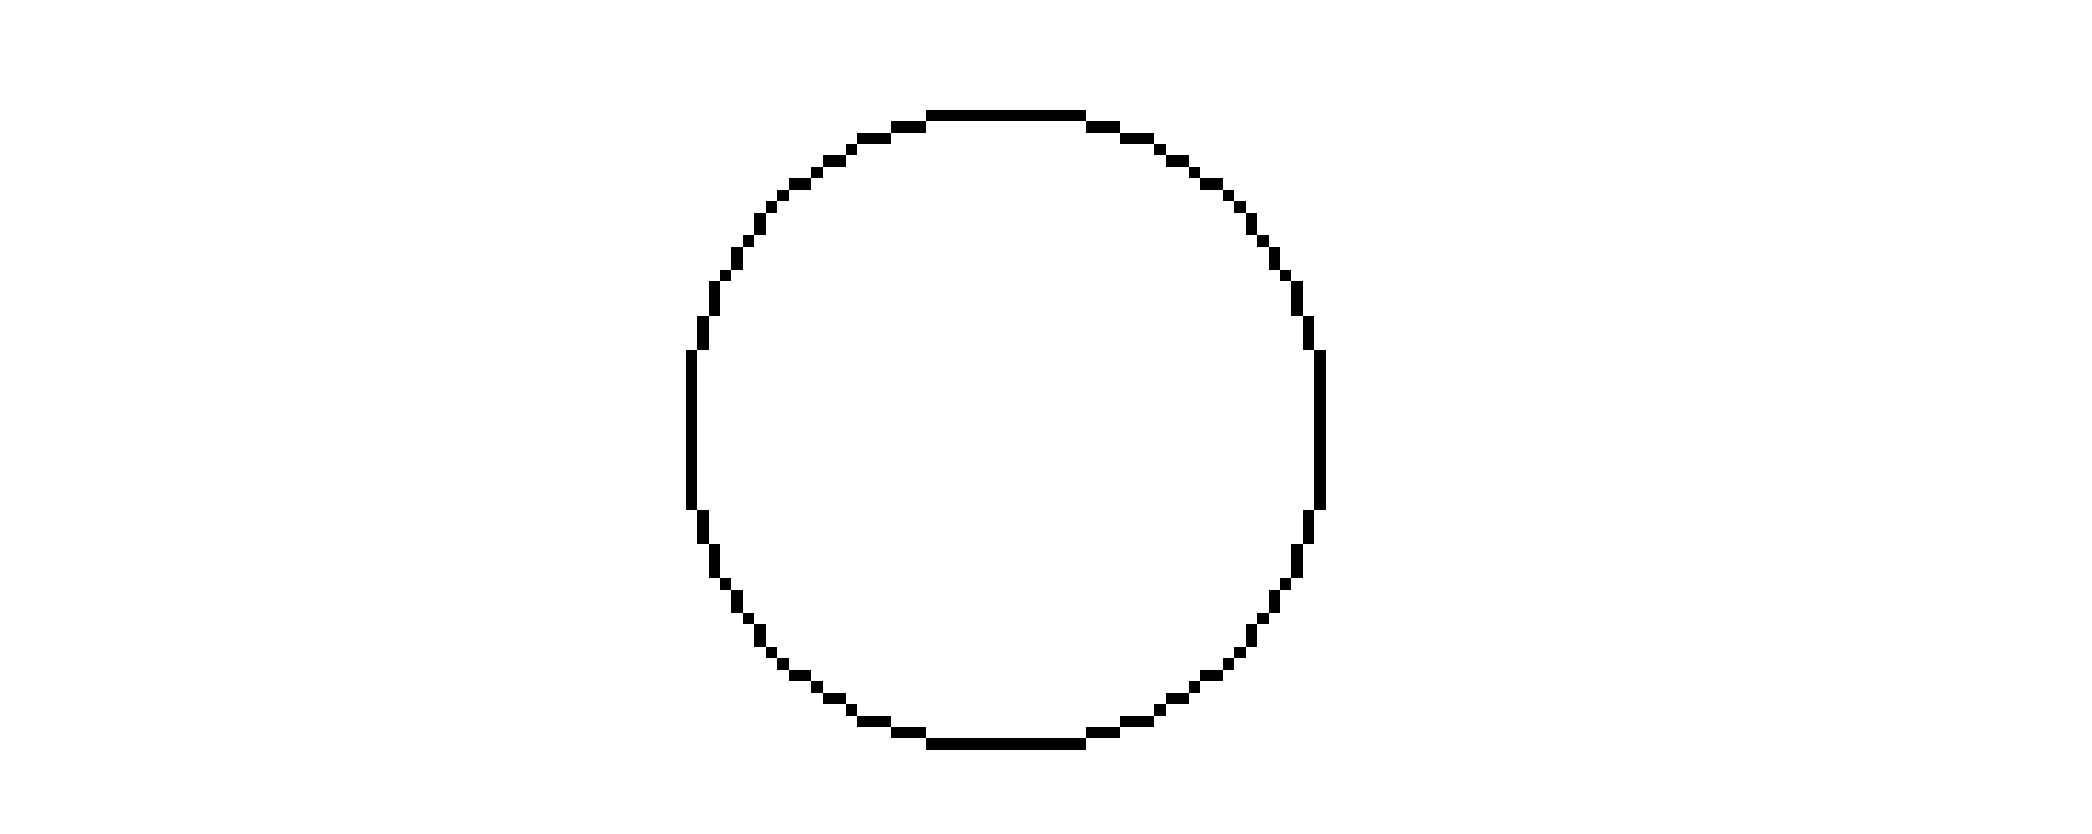 circle-drawing